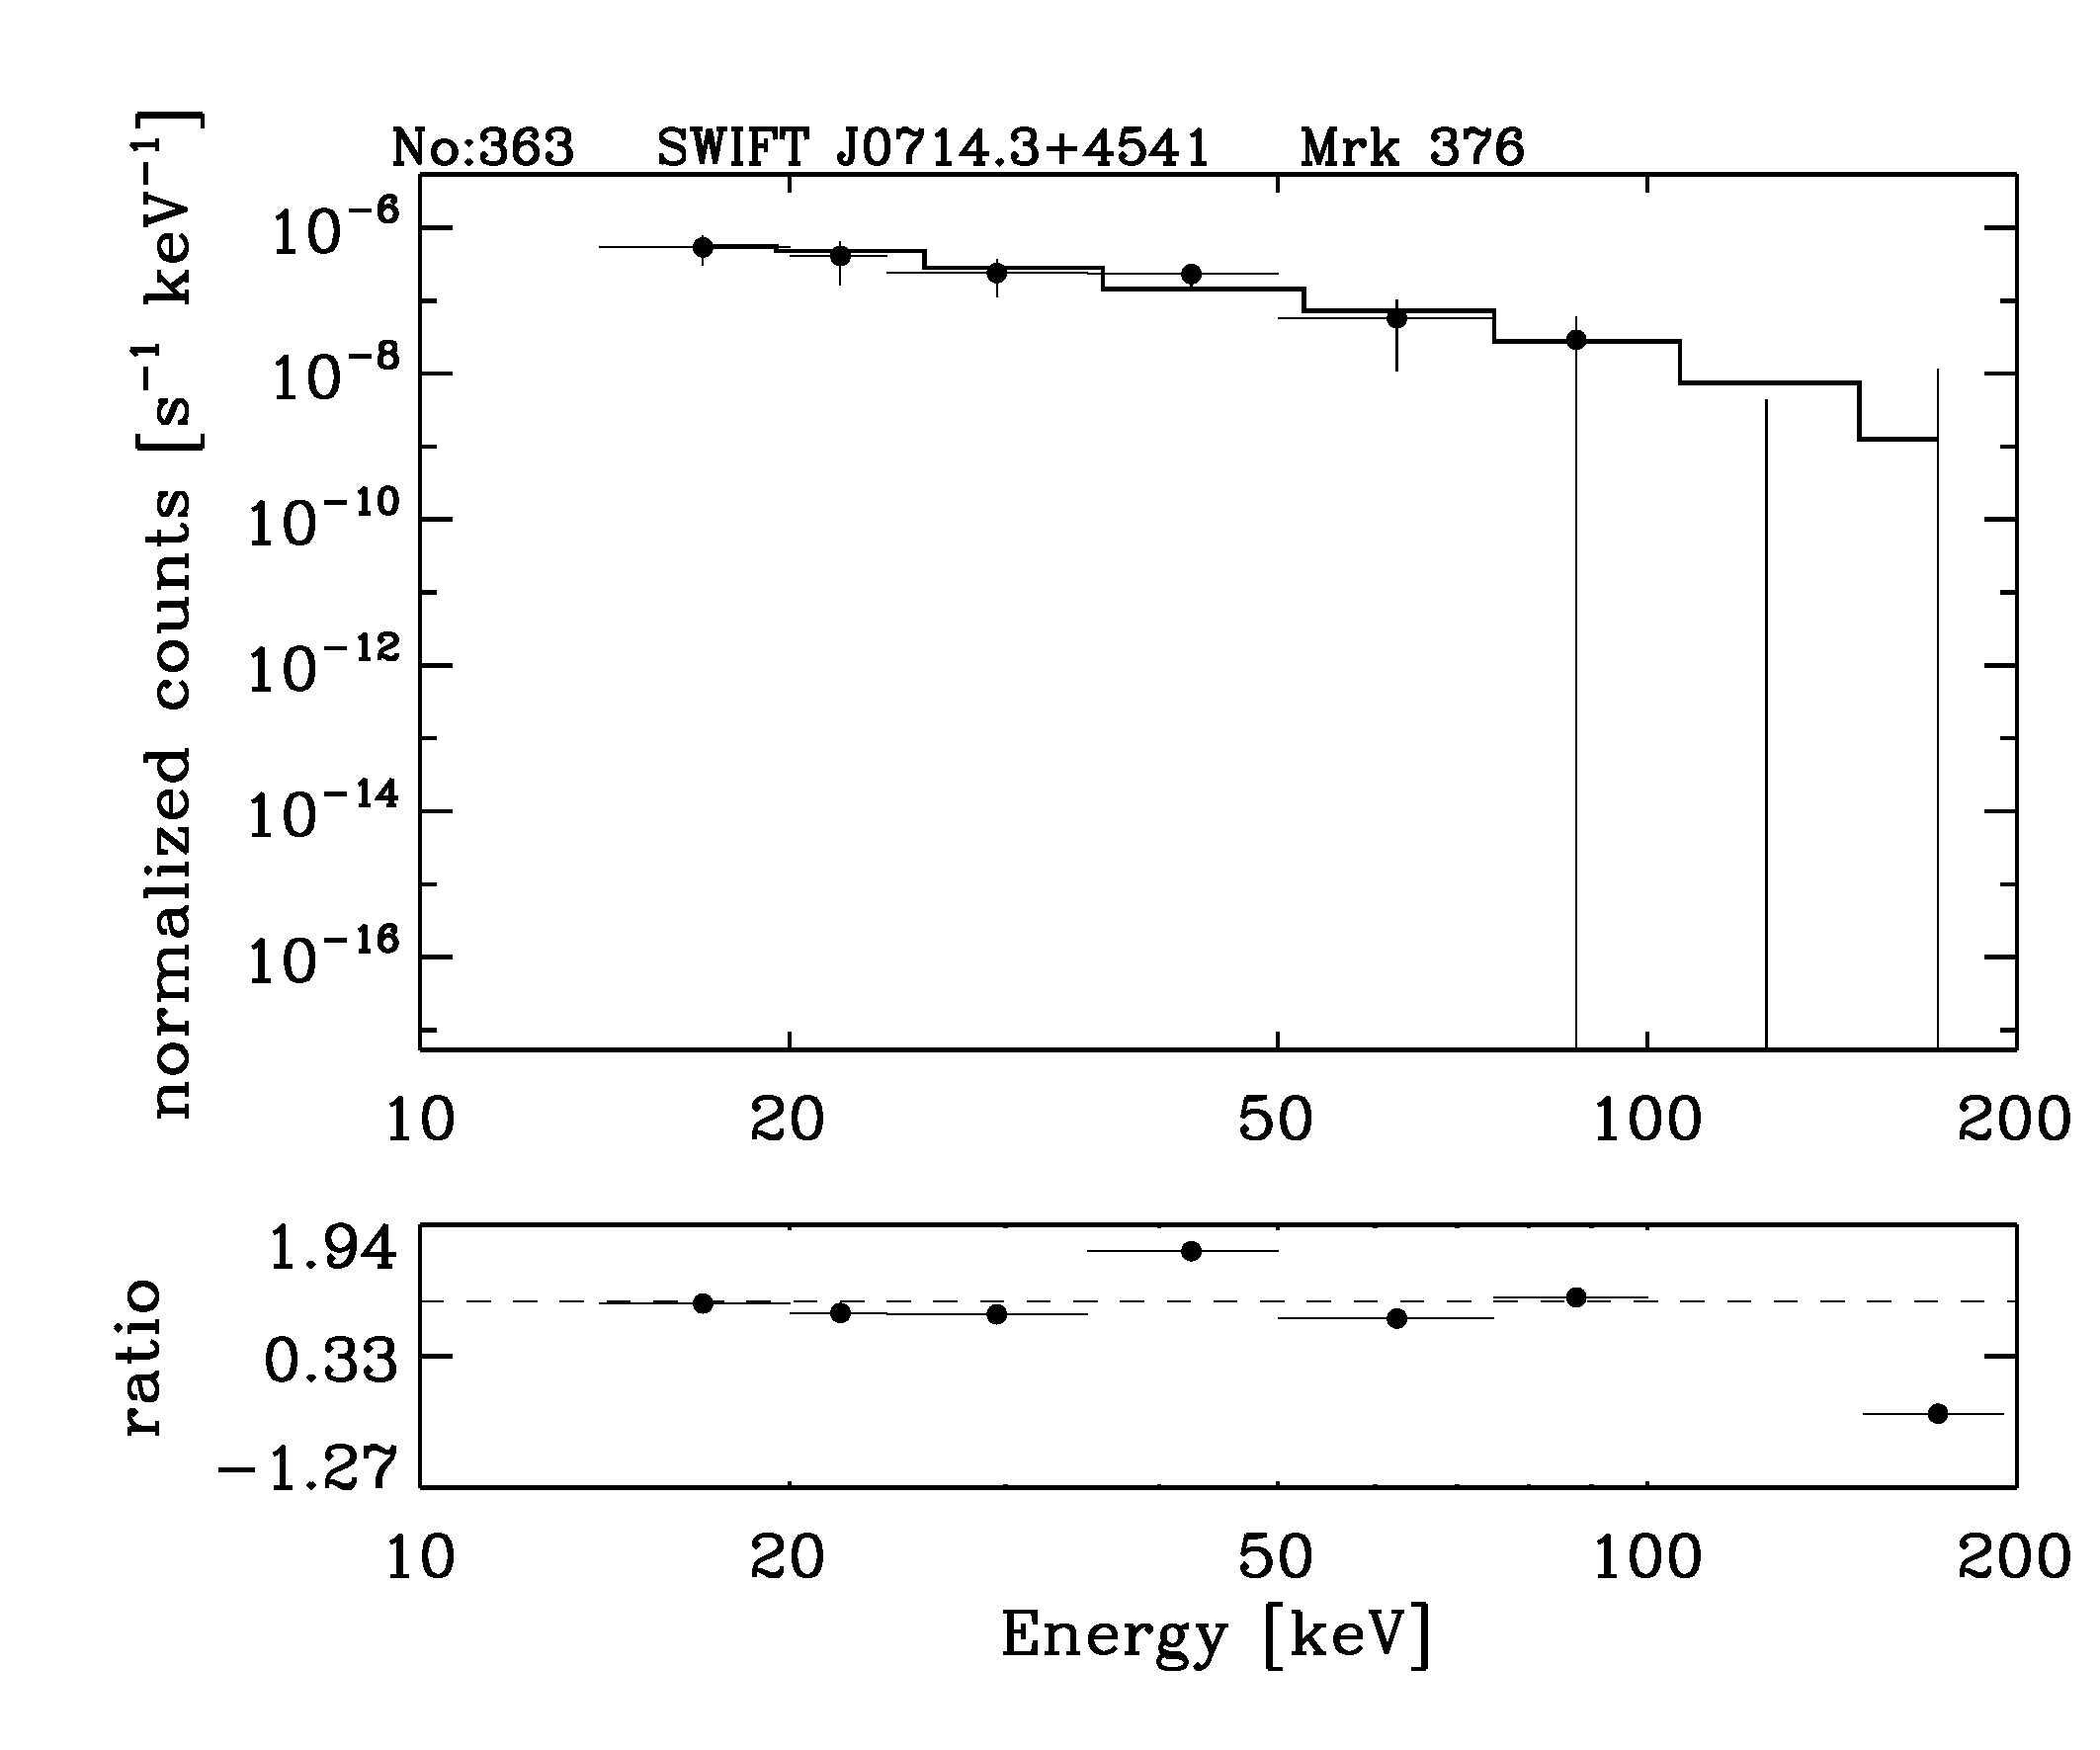 BAT Spectrum for SWIFT J0714.3+4541